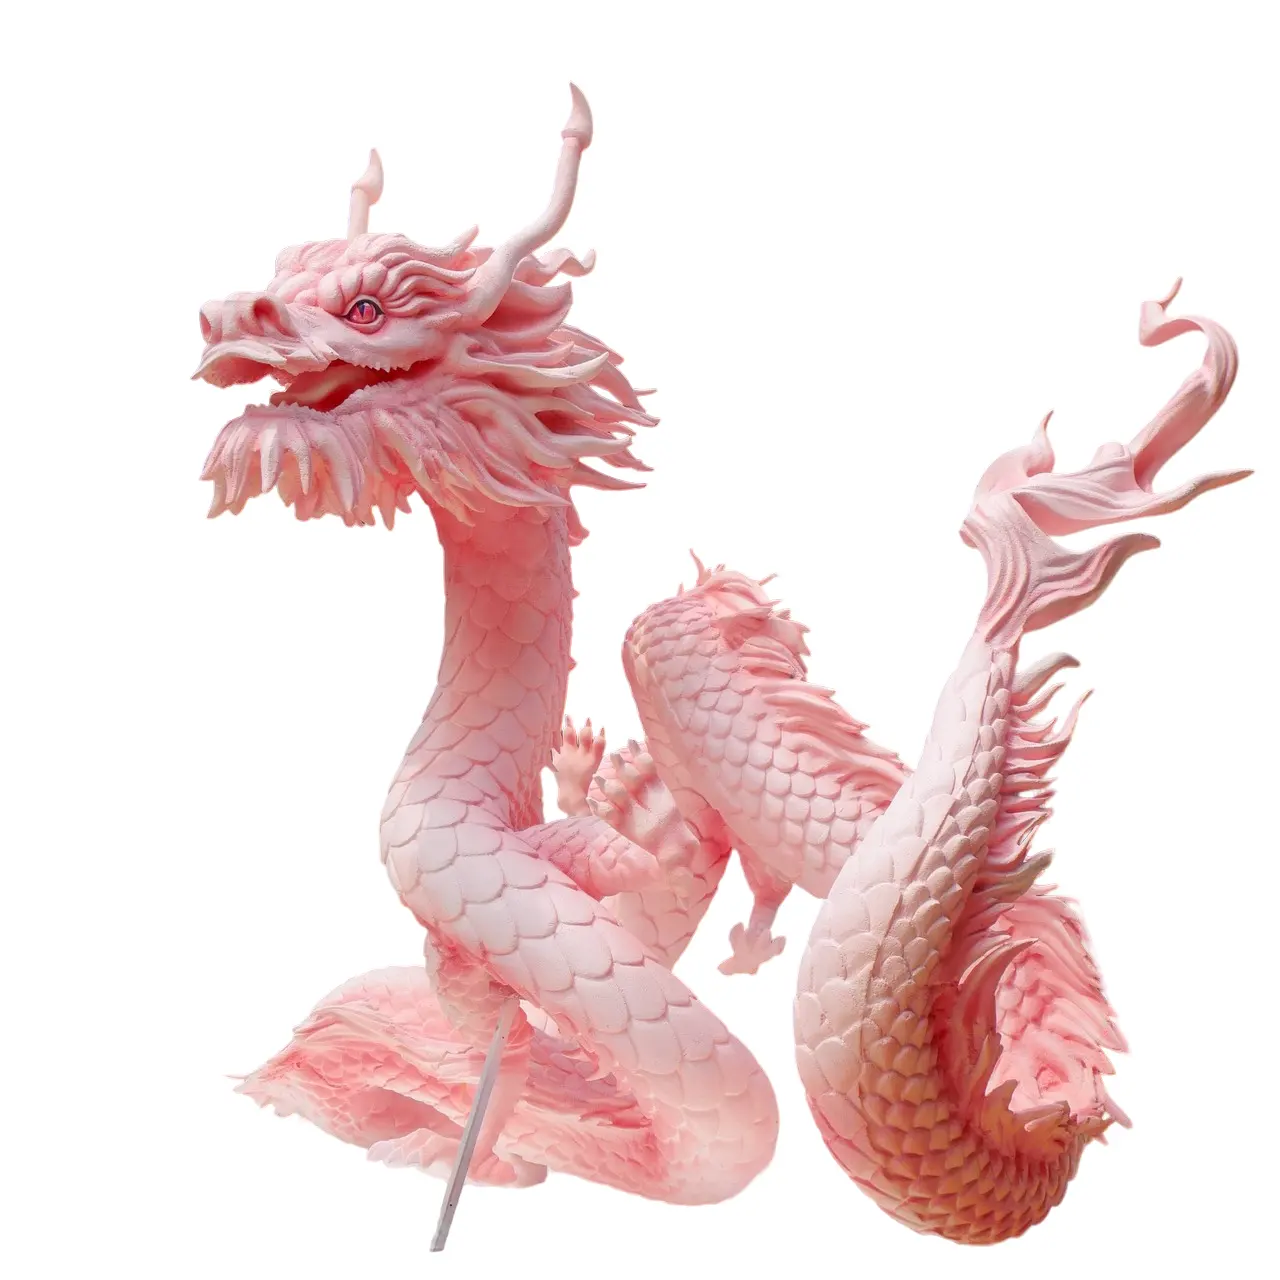 घटनाओं और घरों/बगीचों के लिए गुलाबी रंग का अनुकूलित आकार एशियाई शैली का 3डी ड्रैगन सजावट मॉडल उच्च गुणवत्ता